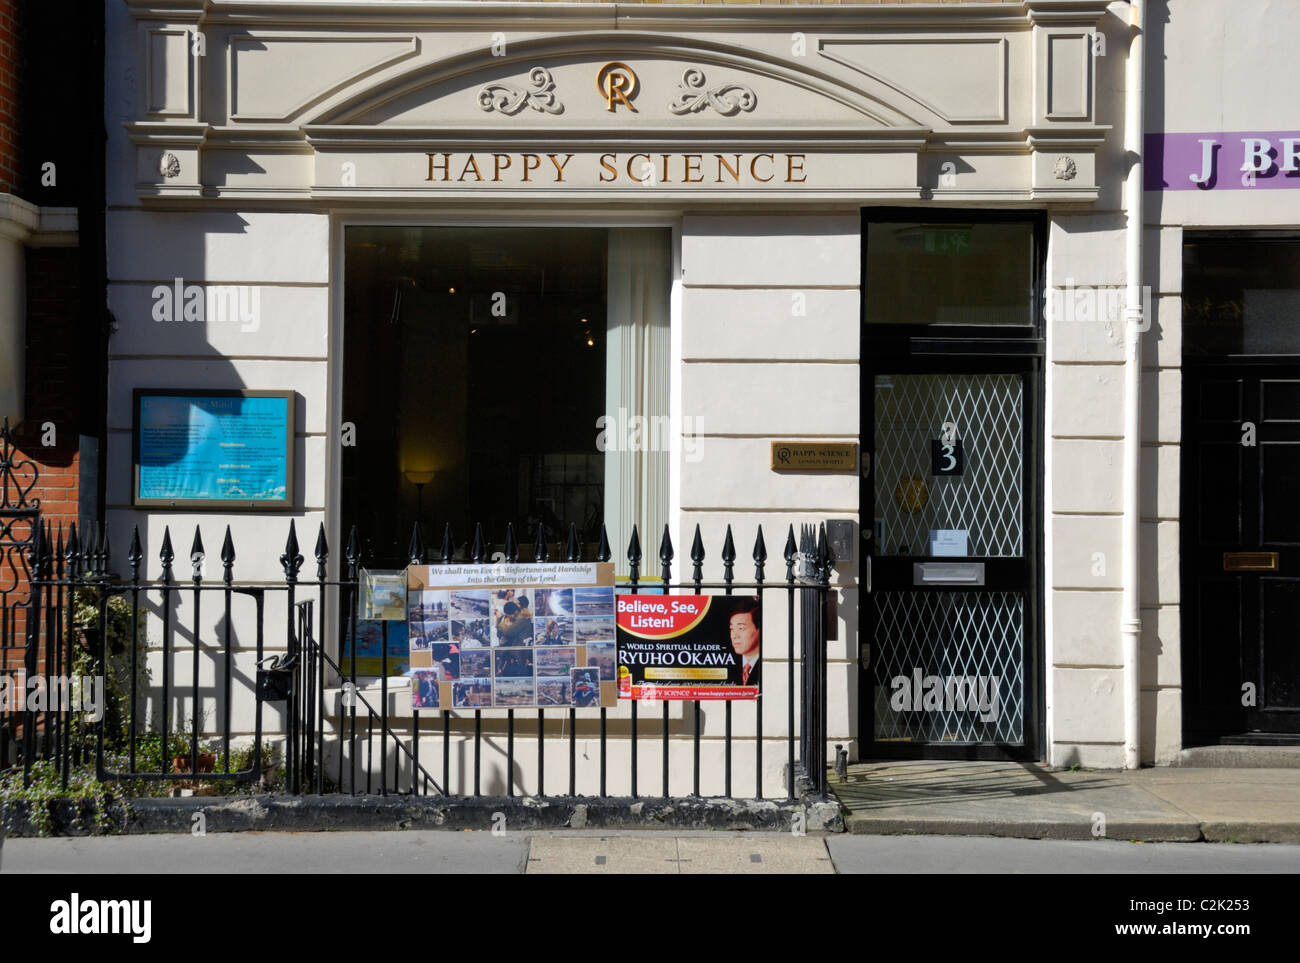 Siège britannique de la science en mouvement religieux heureux Margaret St, Londres, Angleterre Banque D'Images